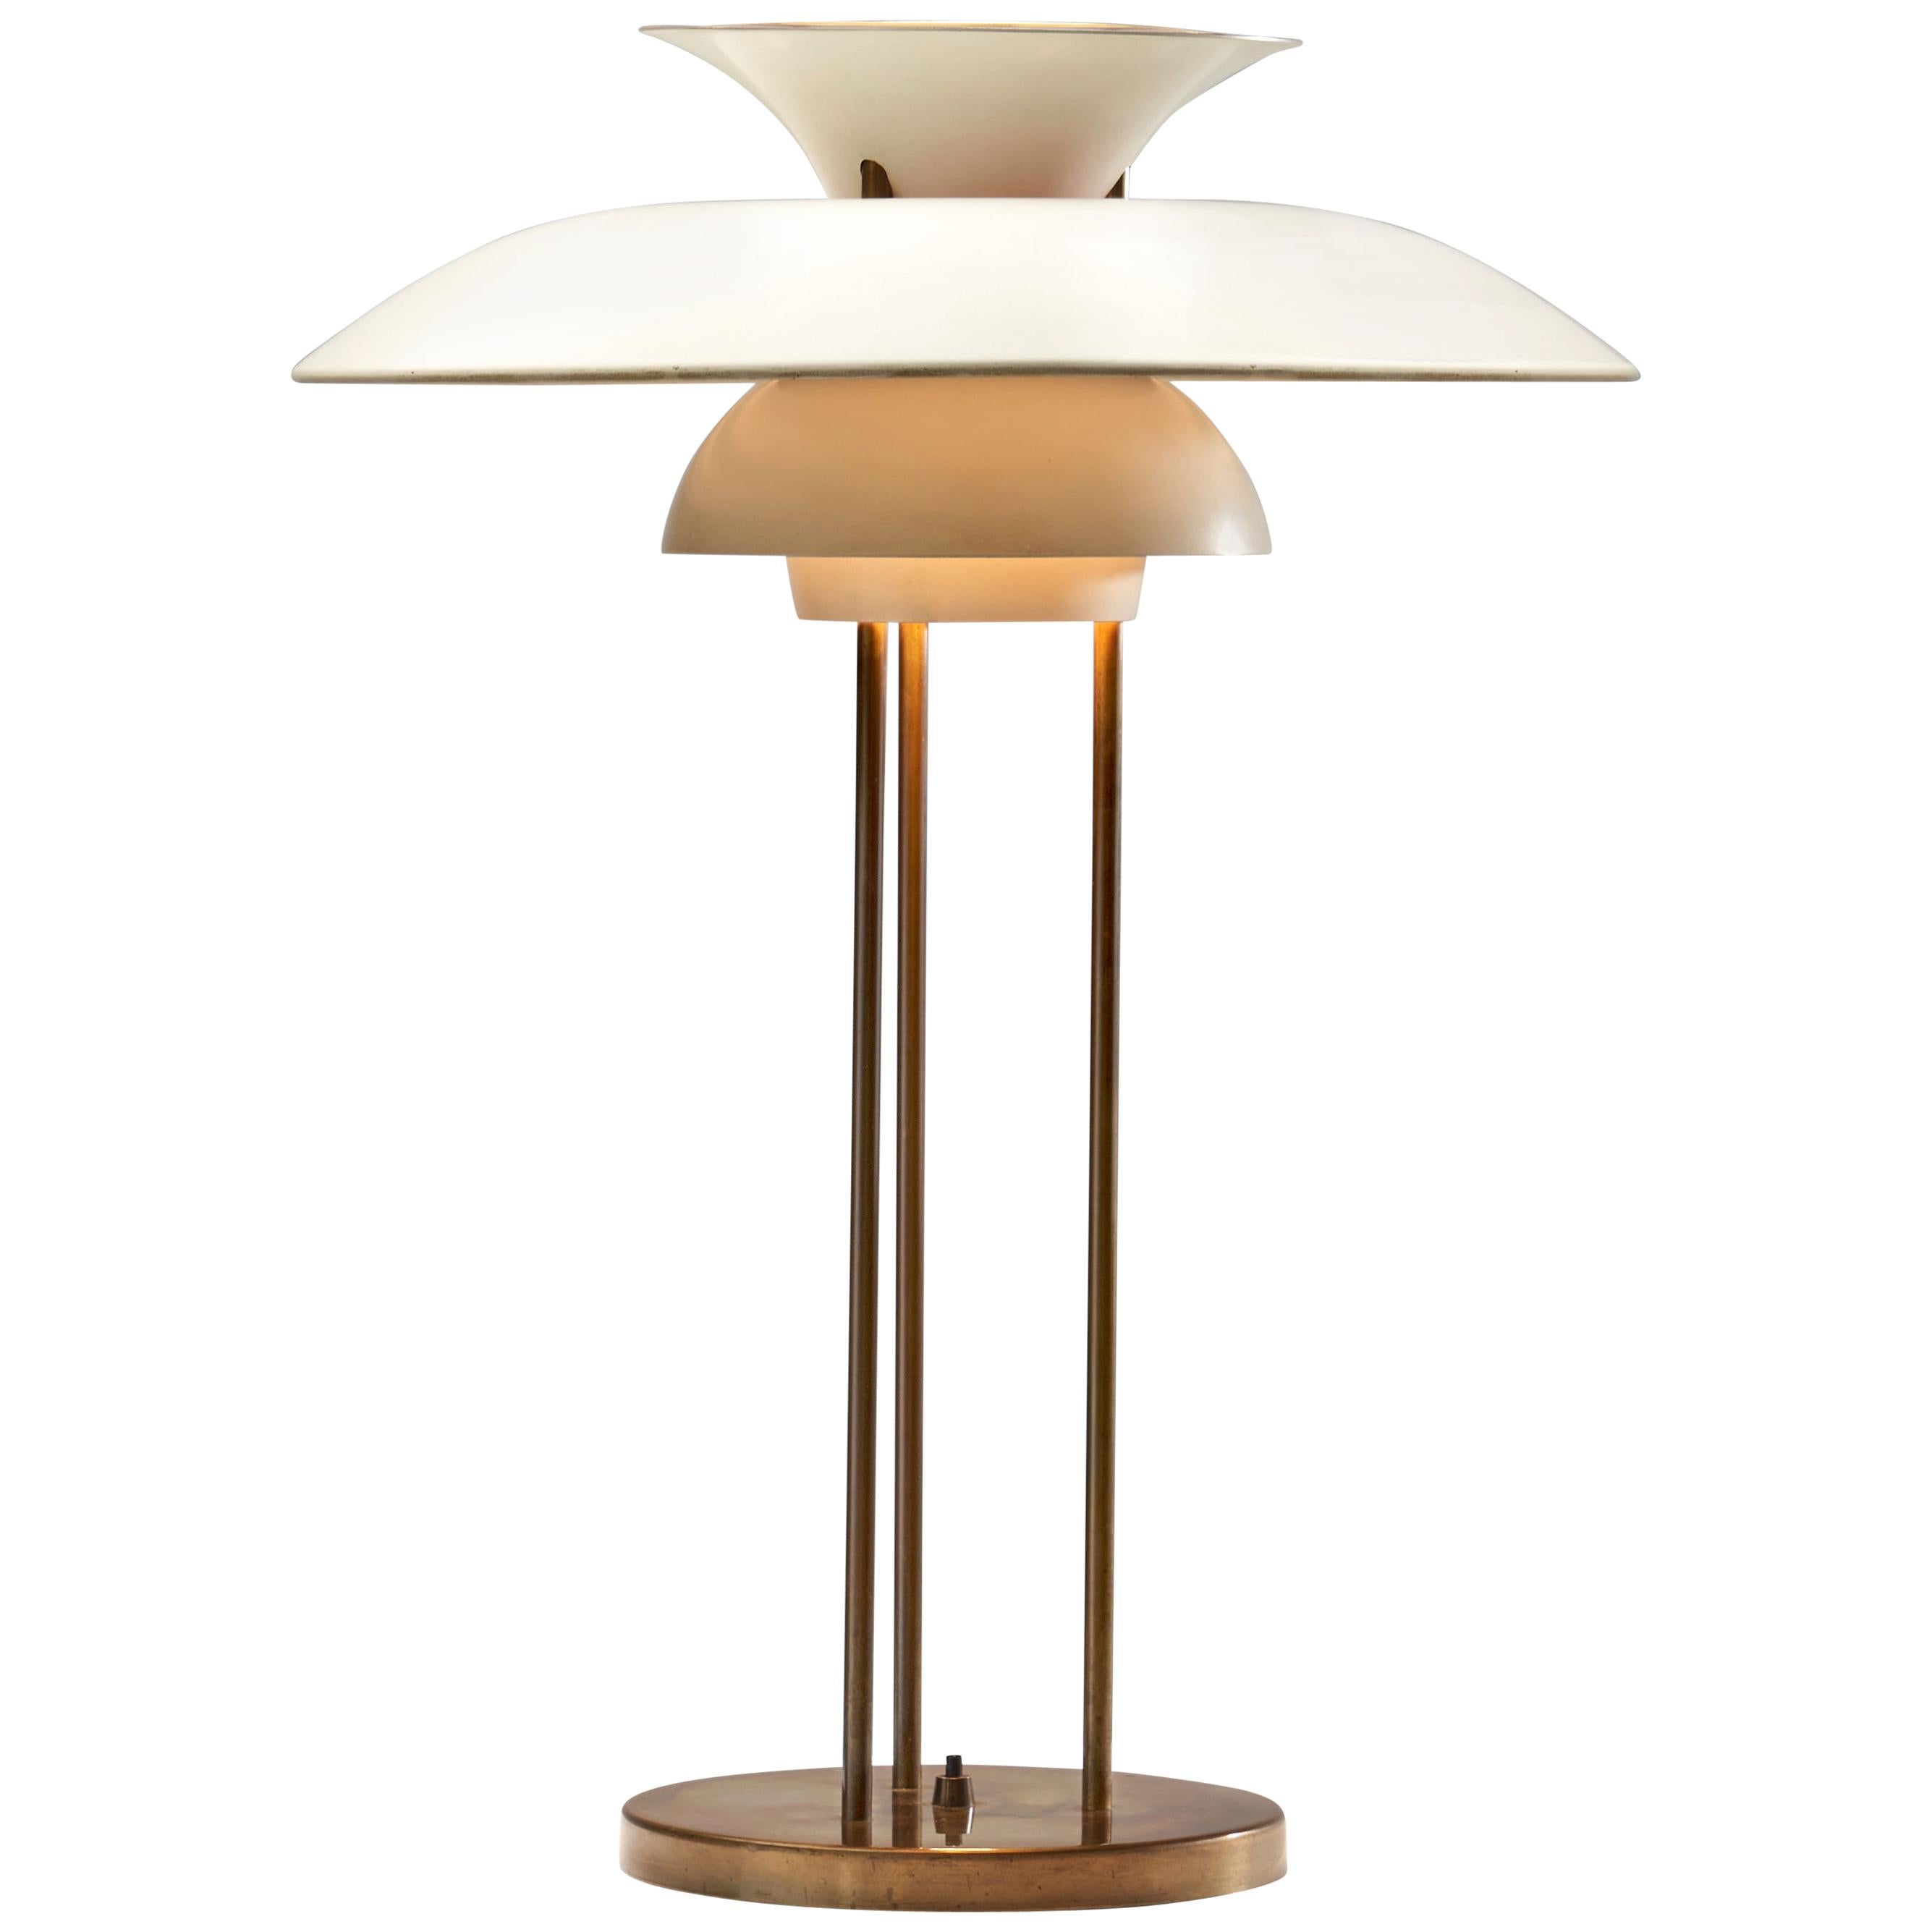 Poul Henningsen “PH-5” Table Lamp for Louis Poulsen, Denmark, 1958